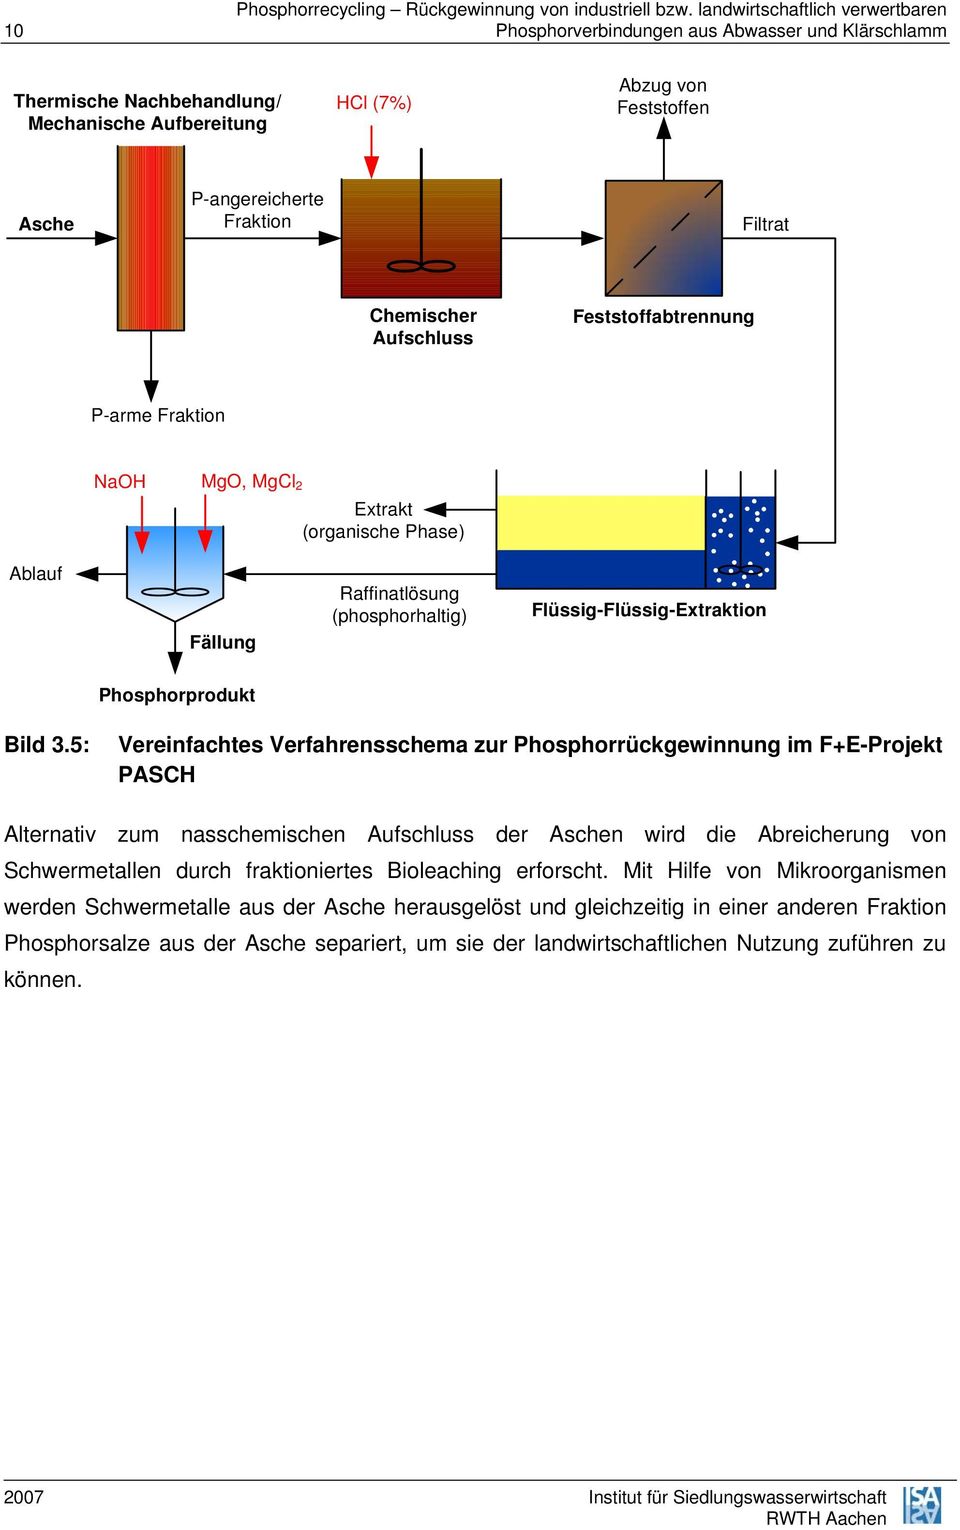 5: Vereinfachtes Verfahrensschema zur Phosphorrückgewinnung im F+E-Projekt PASCH Alternativ zum nasschemischen Aufschluss der Aschen wird die Abreicherung von Schwermetallen durch fraktioniertes